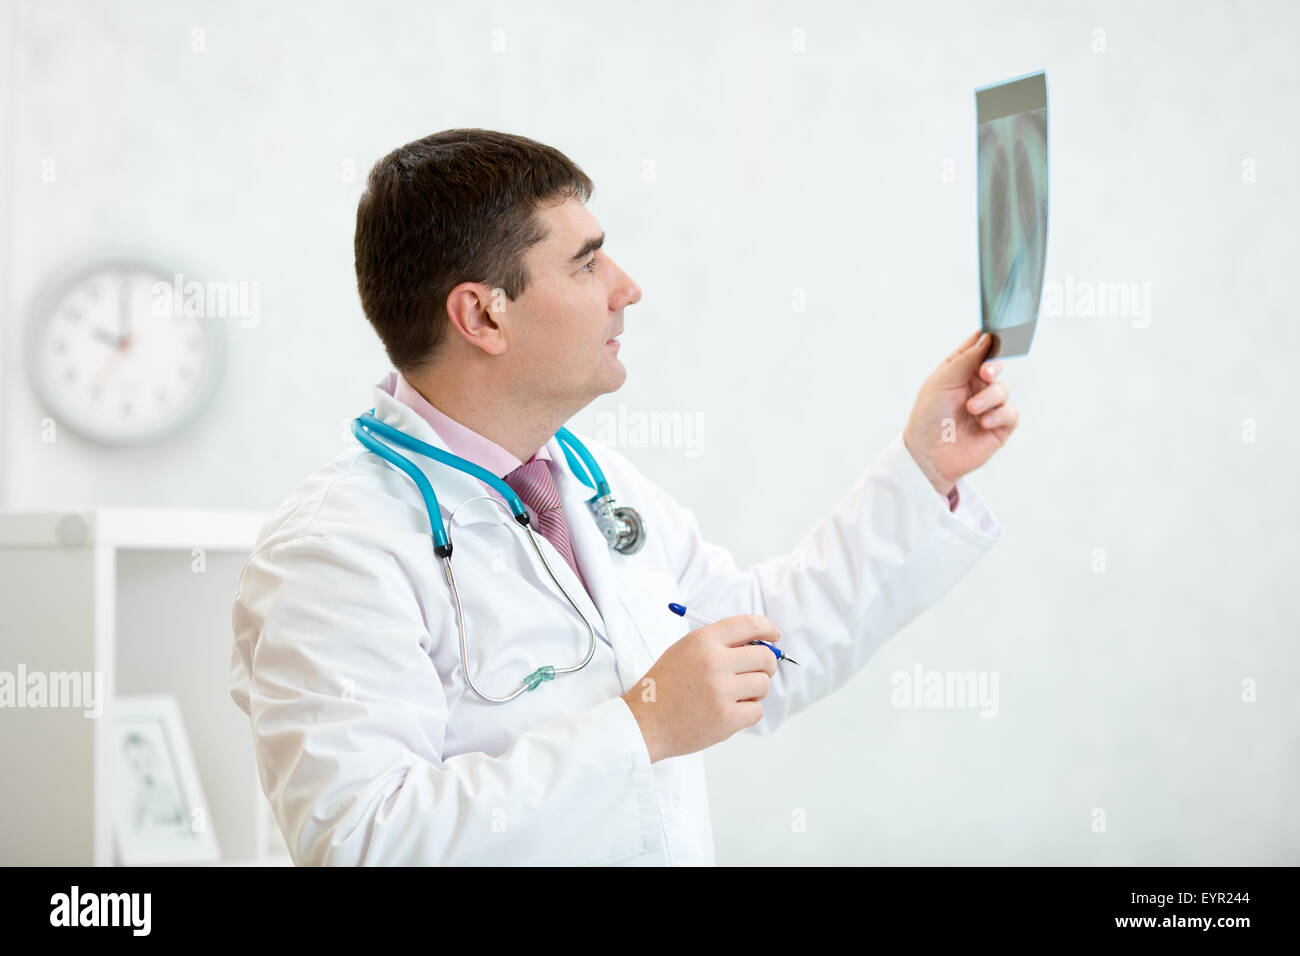 Médico examina una radiografía pulmonar Foto de stock